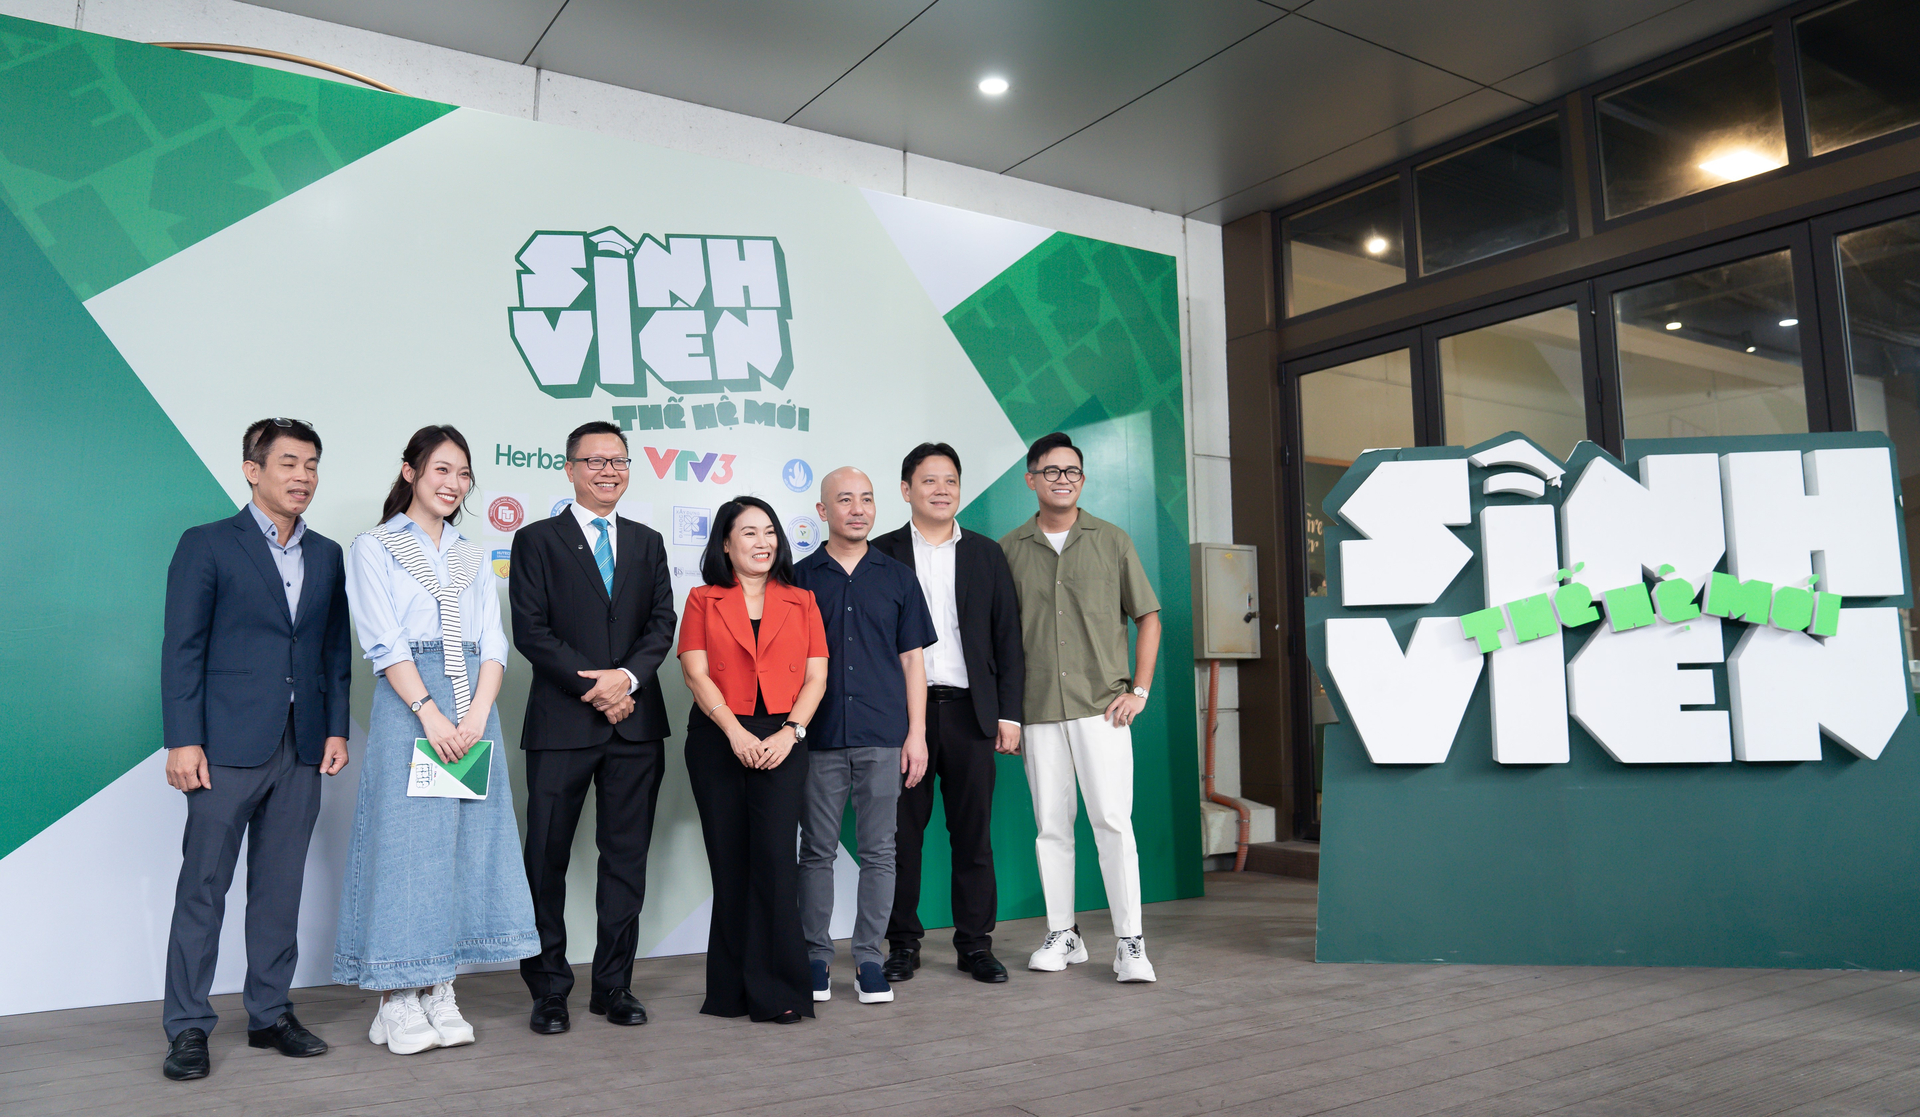 Bà Tạ Bích Loan, Trưởng ban Sản xuất các chương trình giải trí VTV3. Ảnh: BTC.